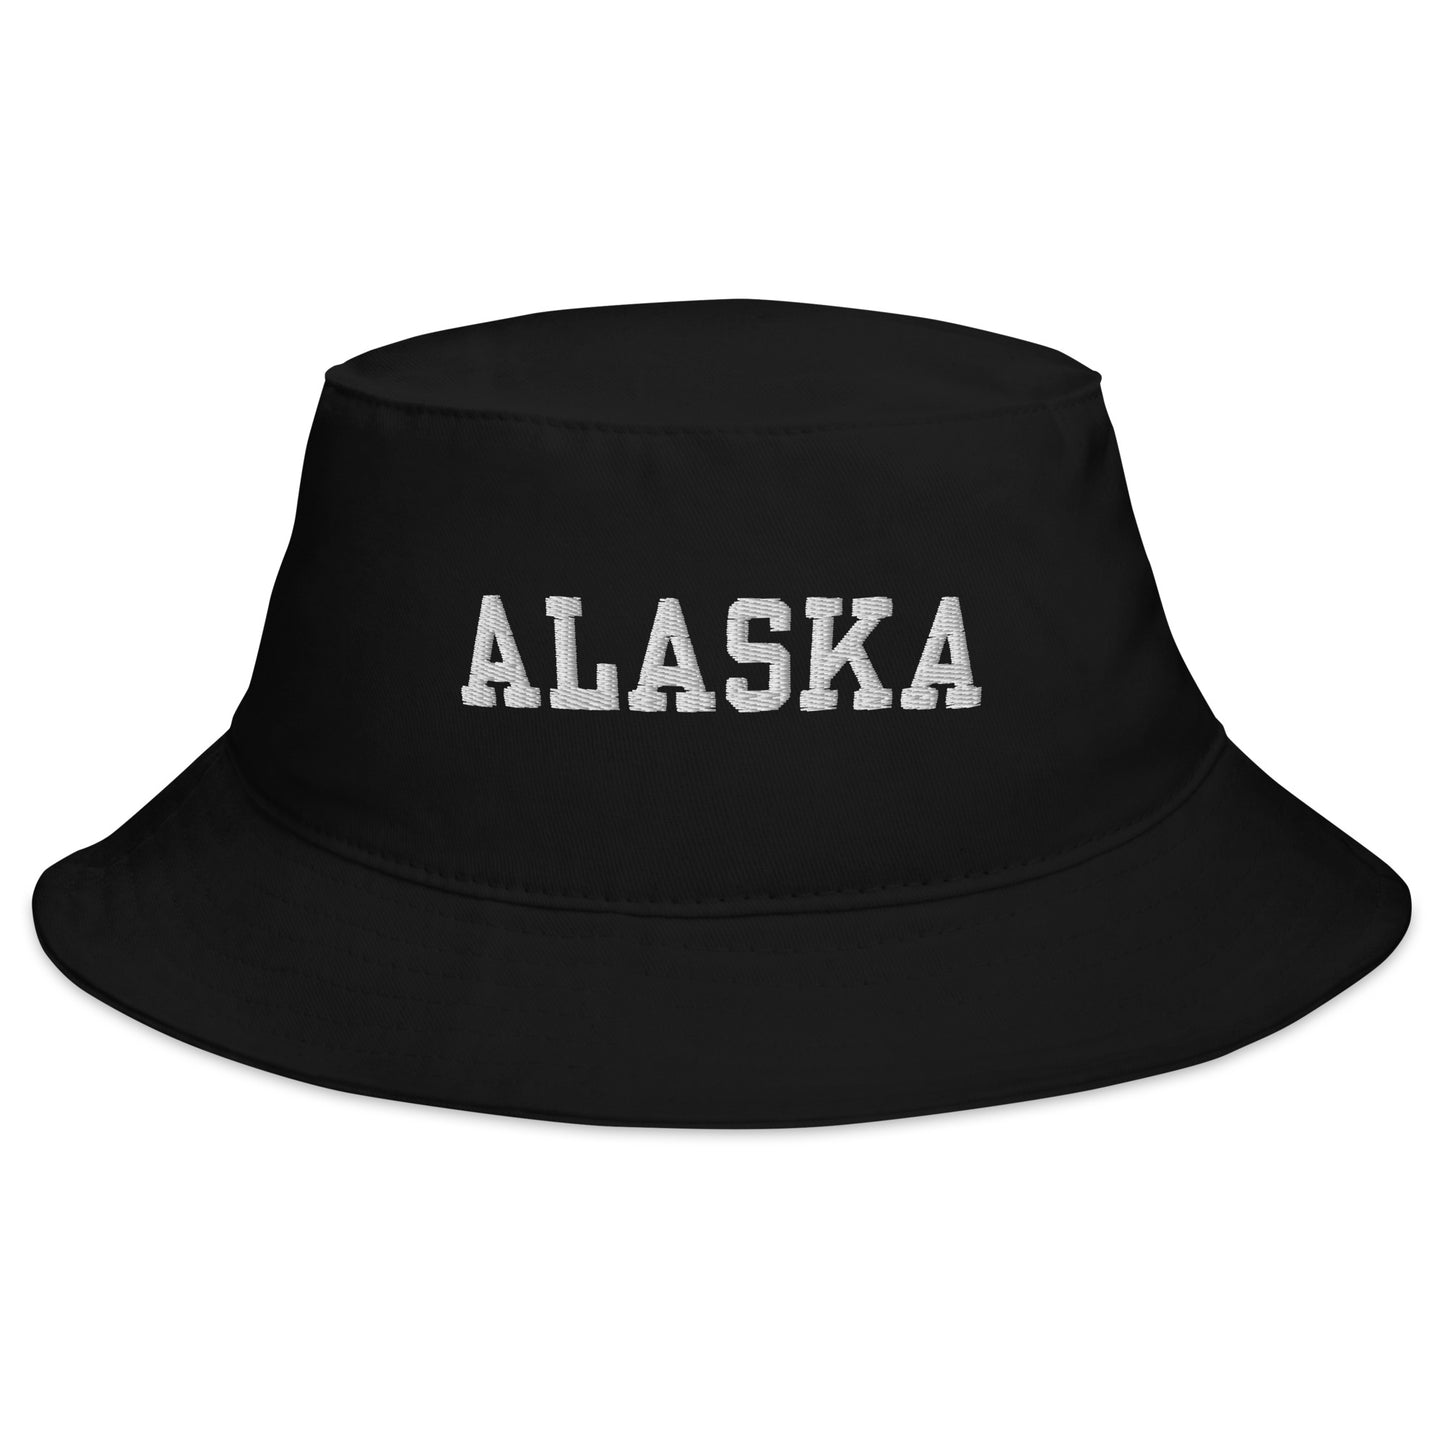 alaska bucket hat